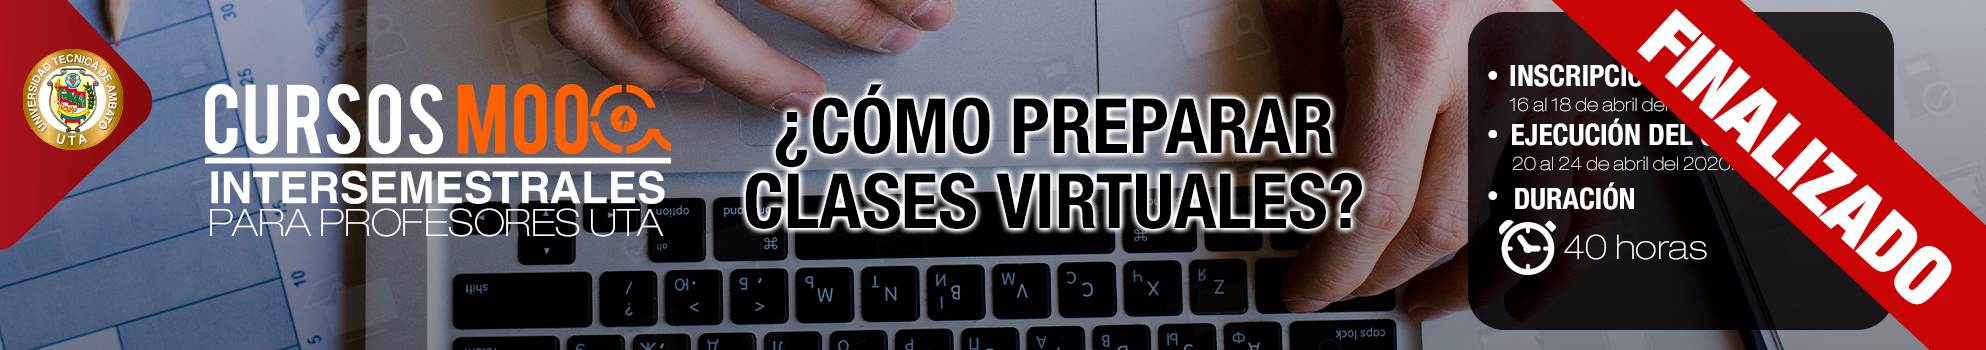 CURSO MOOC INTERSEMESTRAL PROFESORES: ¿Cómo preparar clases virtuales?